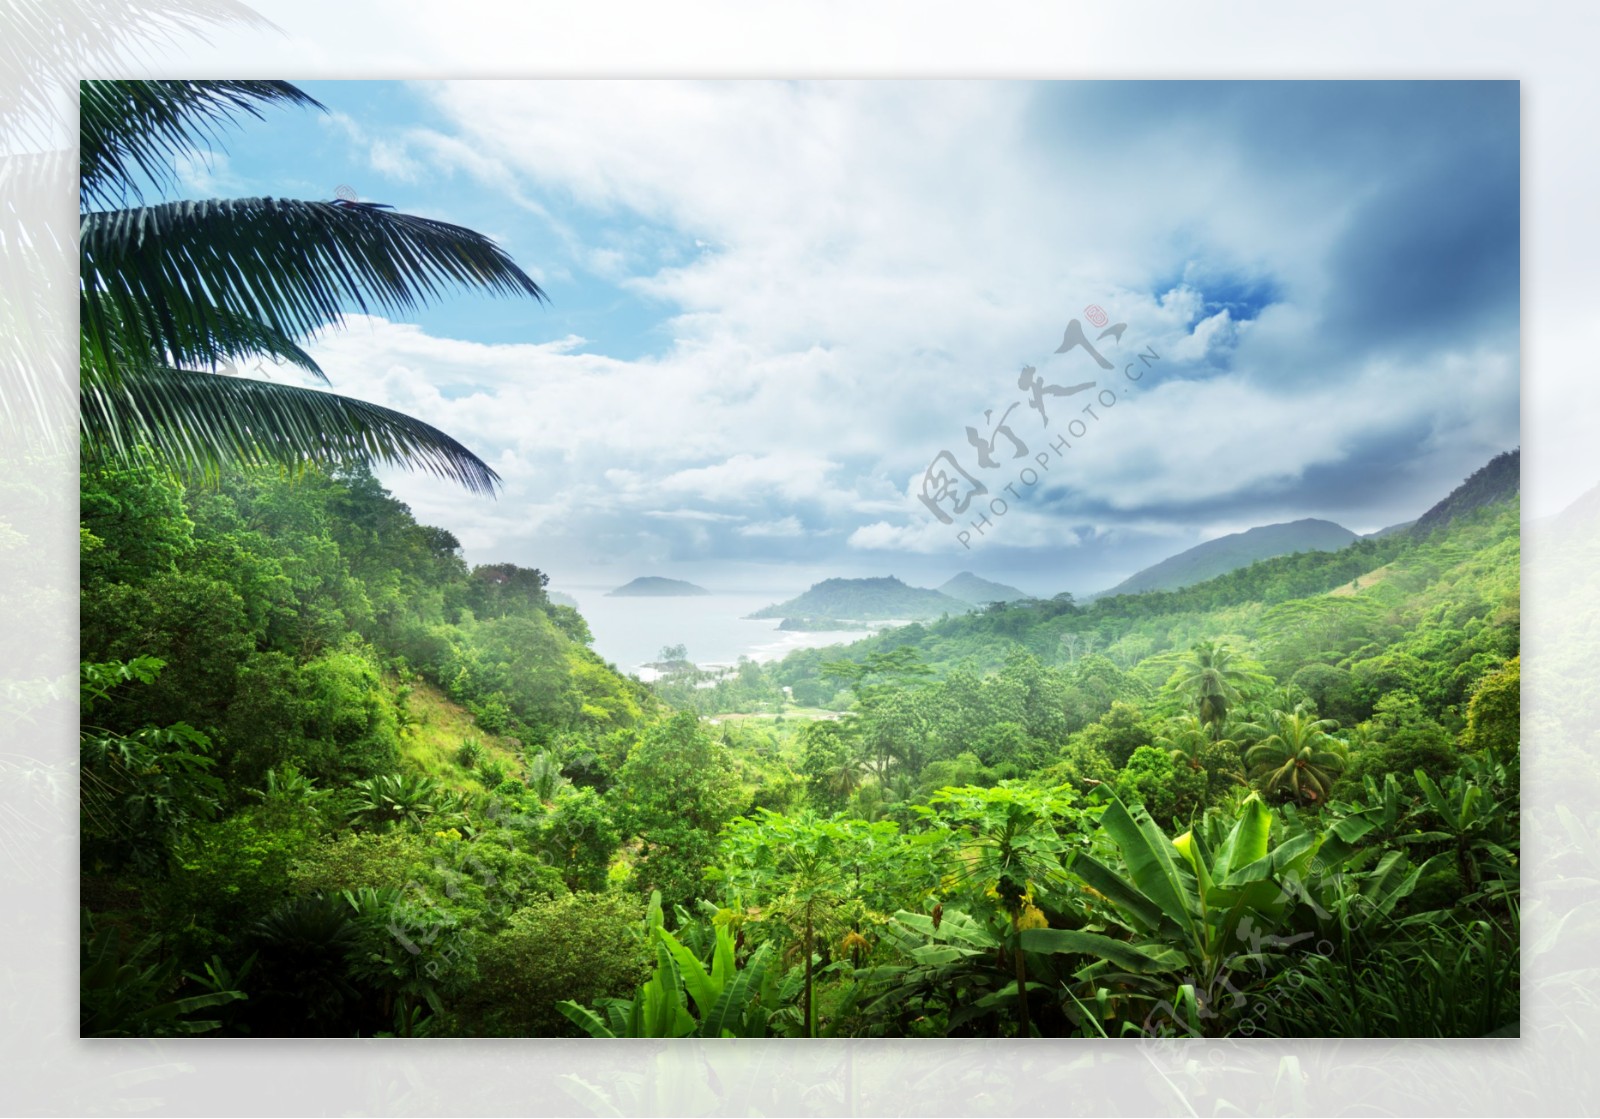 热带雨林风景图片